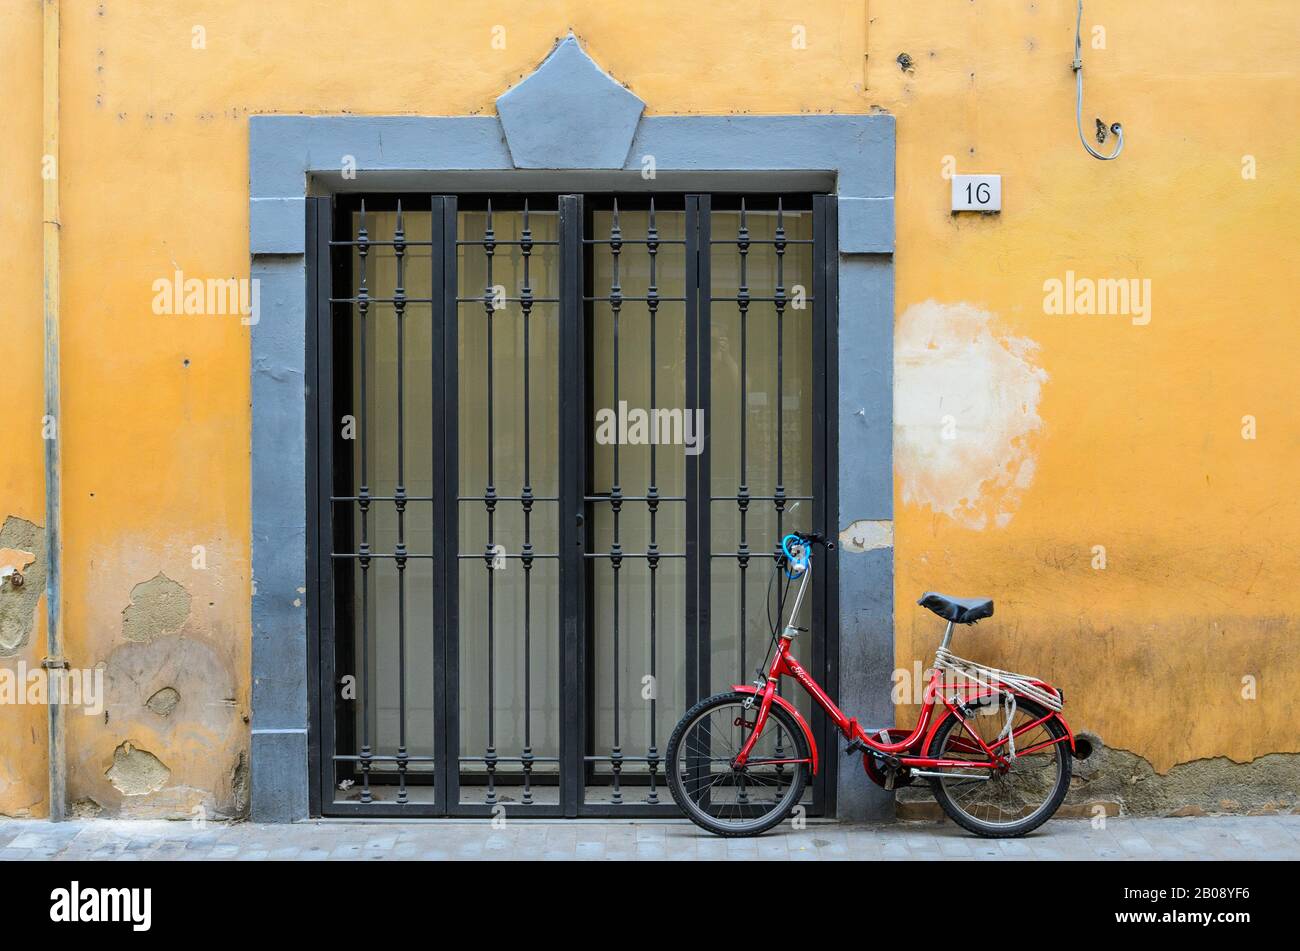 Porte d'un bâtiment peint en jaune, avec un vieux vélo rouge soutenu contre lui. Pise, Italie. Banque D'Images